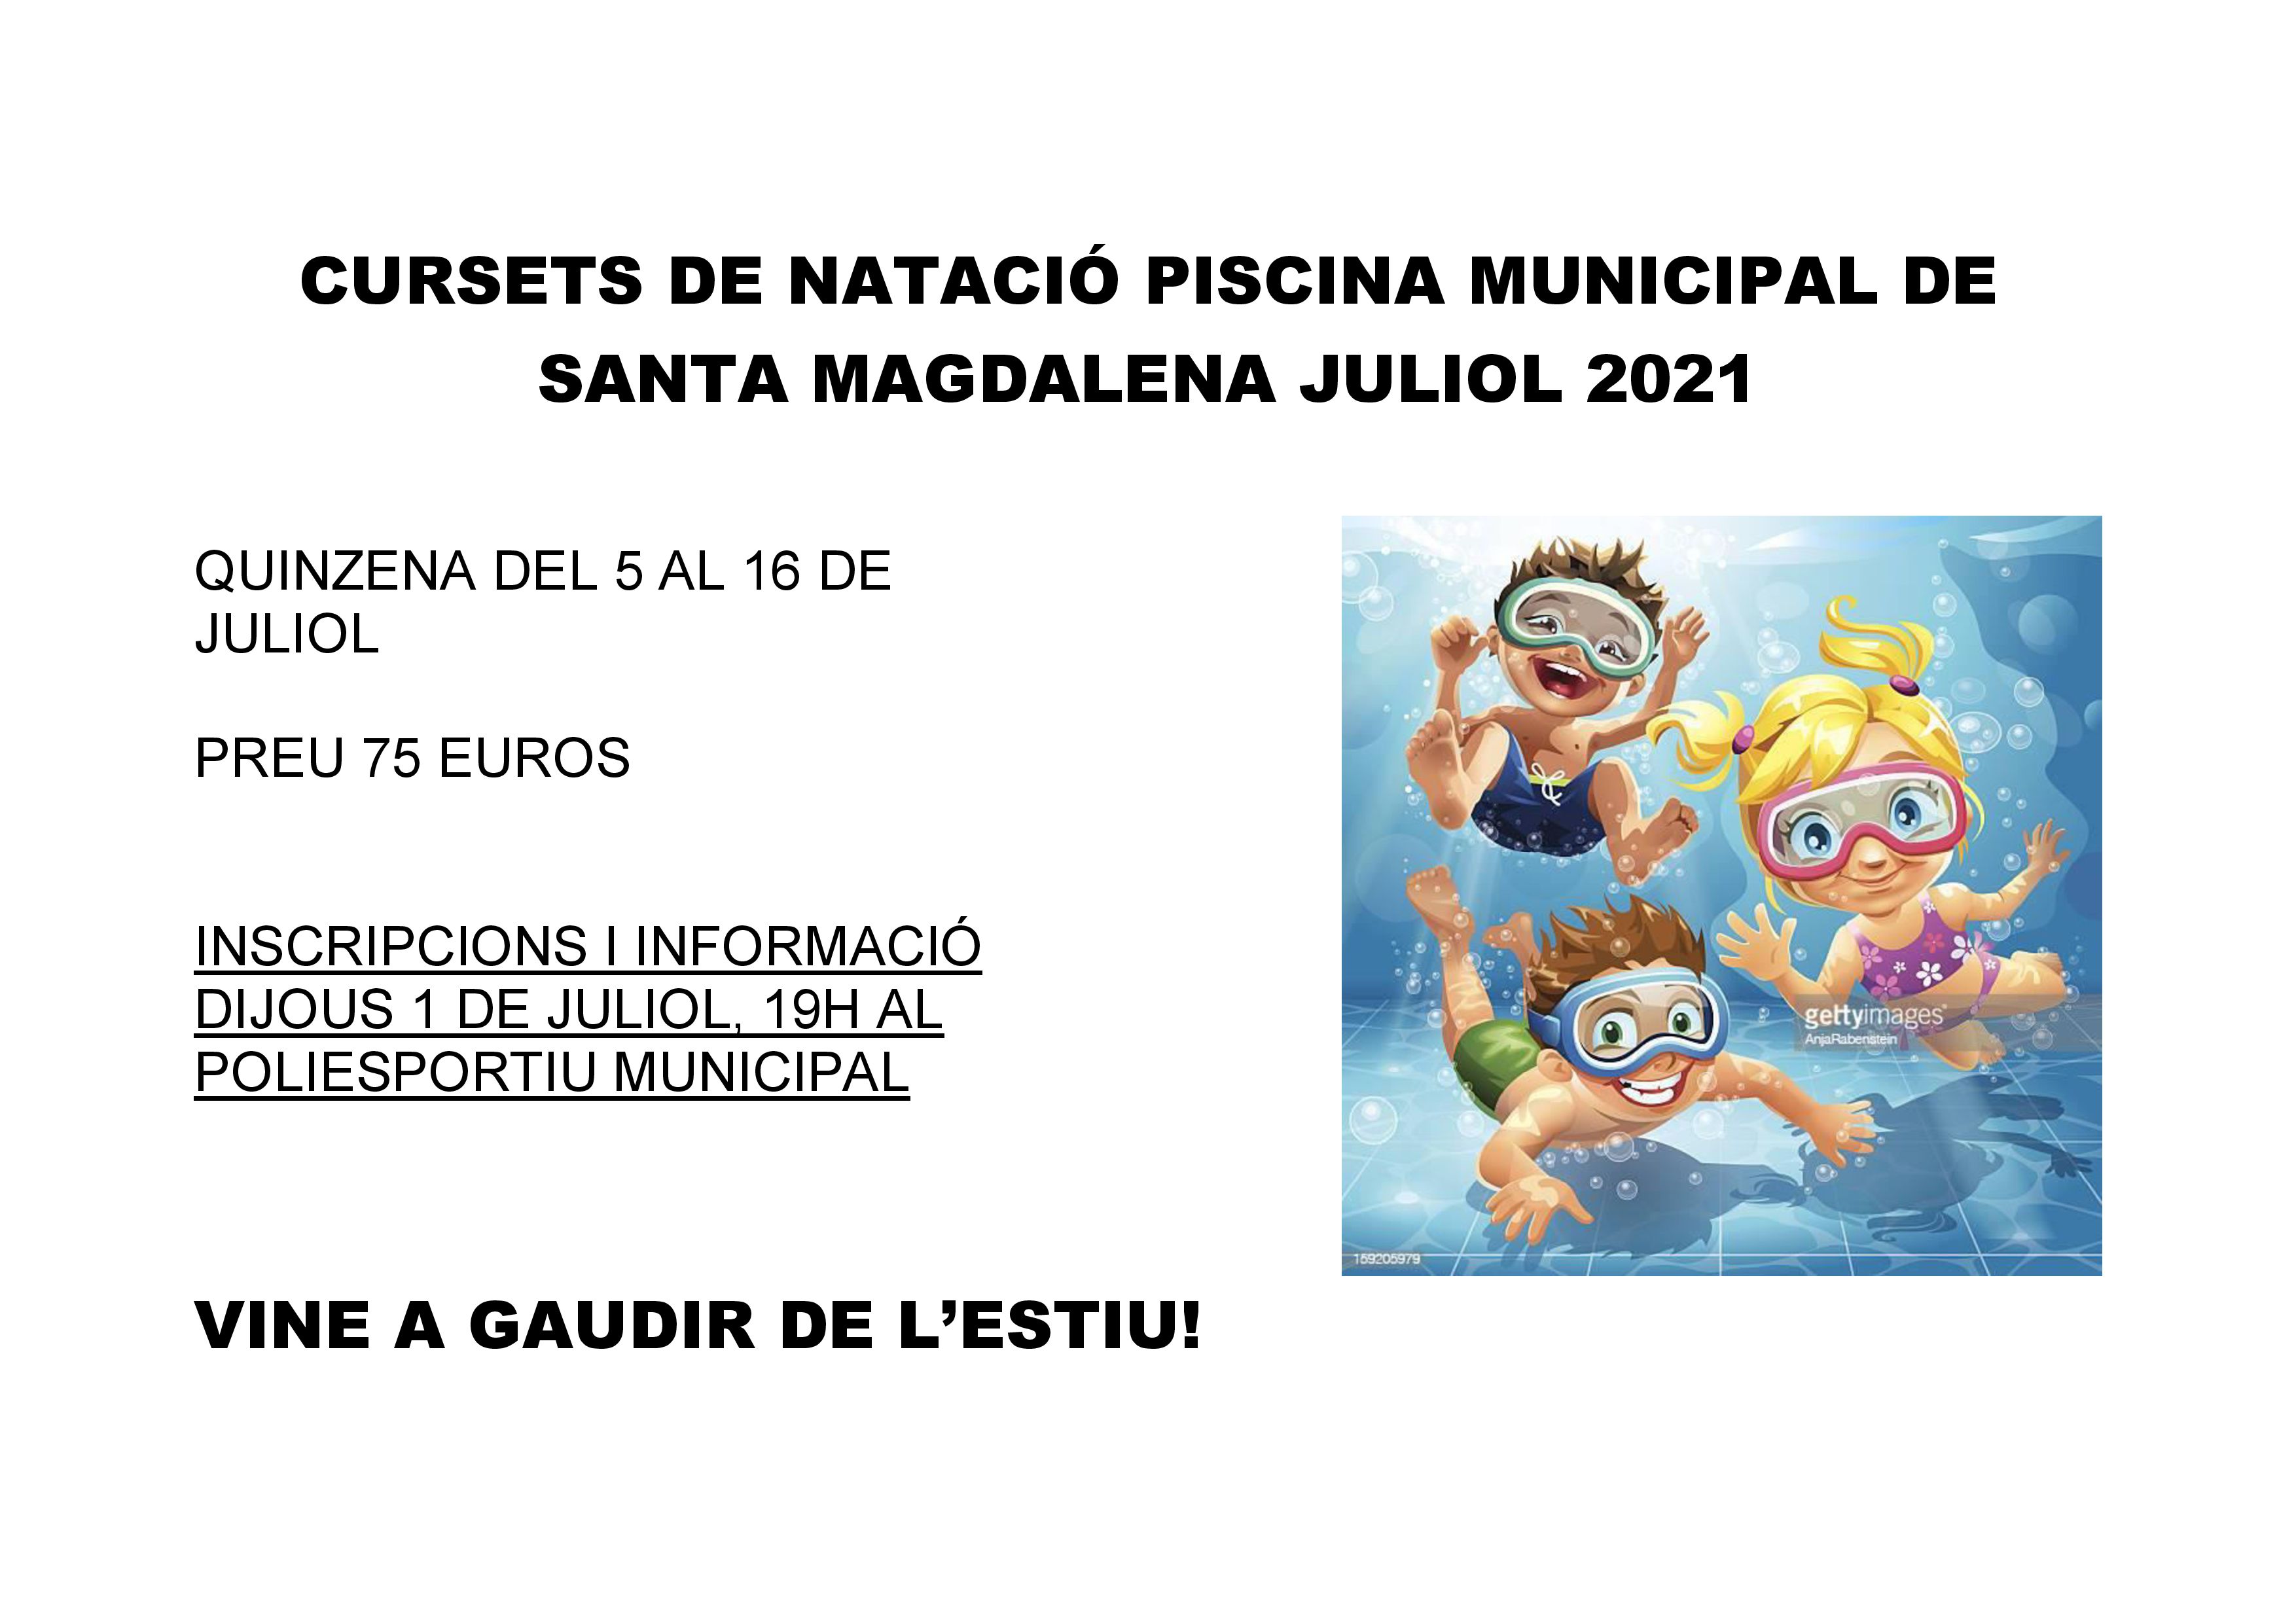 La piscina municipal de Santa Magdalena ofereix cursets de natació entre el 5 i el 16 de juliol